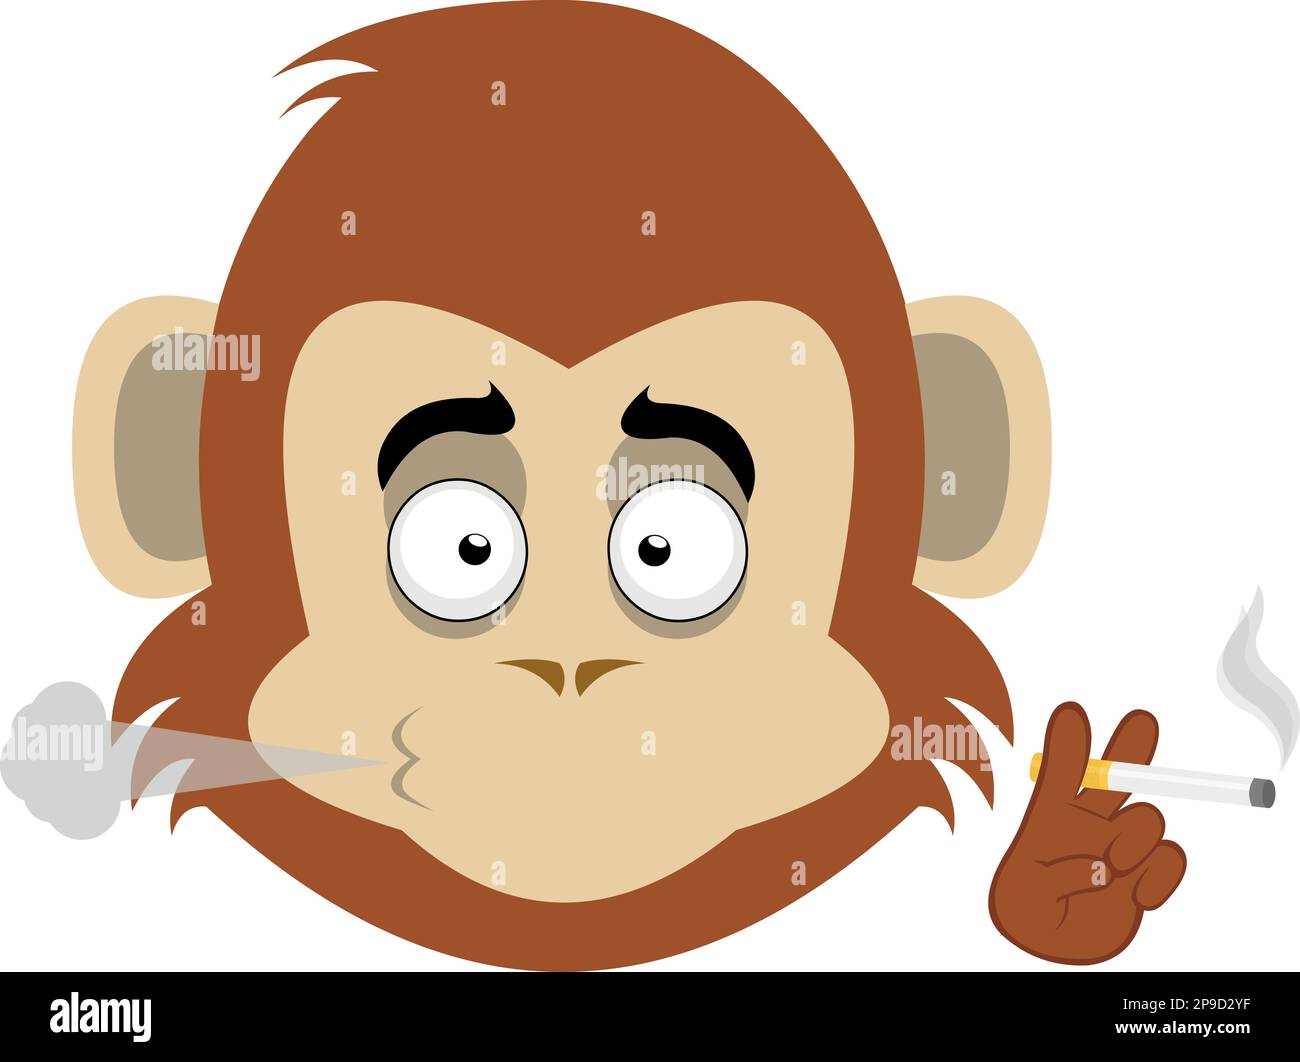 vector illustration face of a cartoon monkey smoking a cigarette Stock Vector